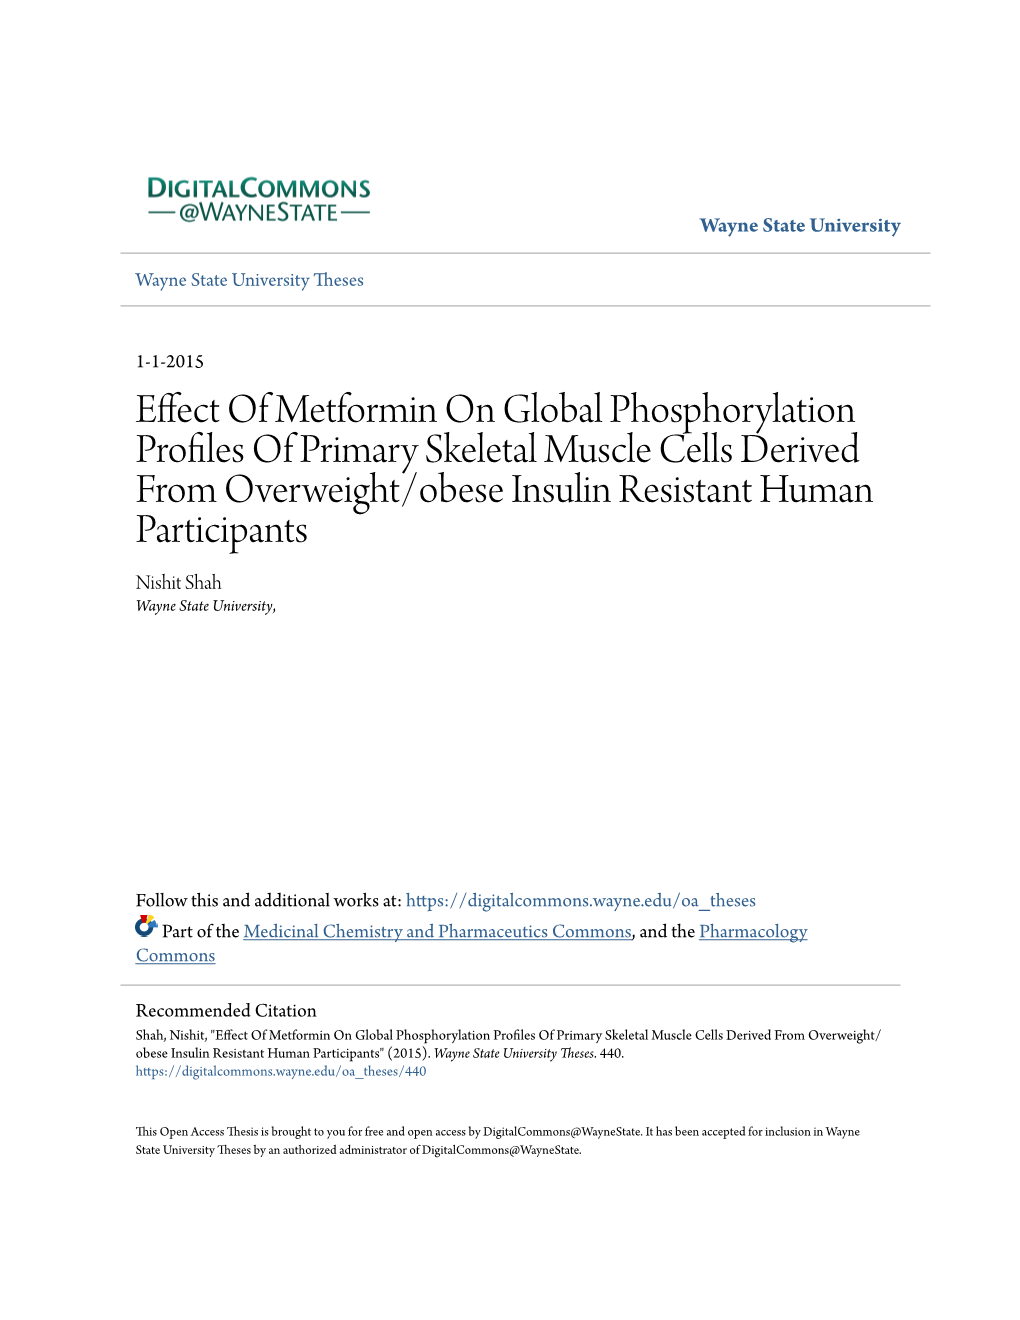 Effect of Metformin on Global Phosphorylation Profiles of Primary